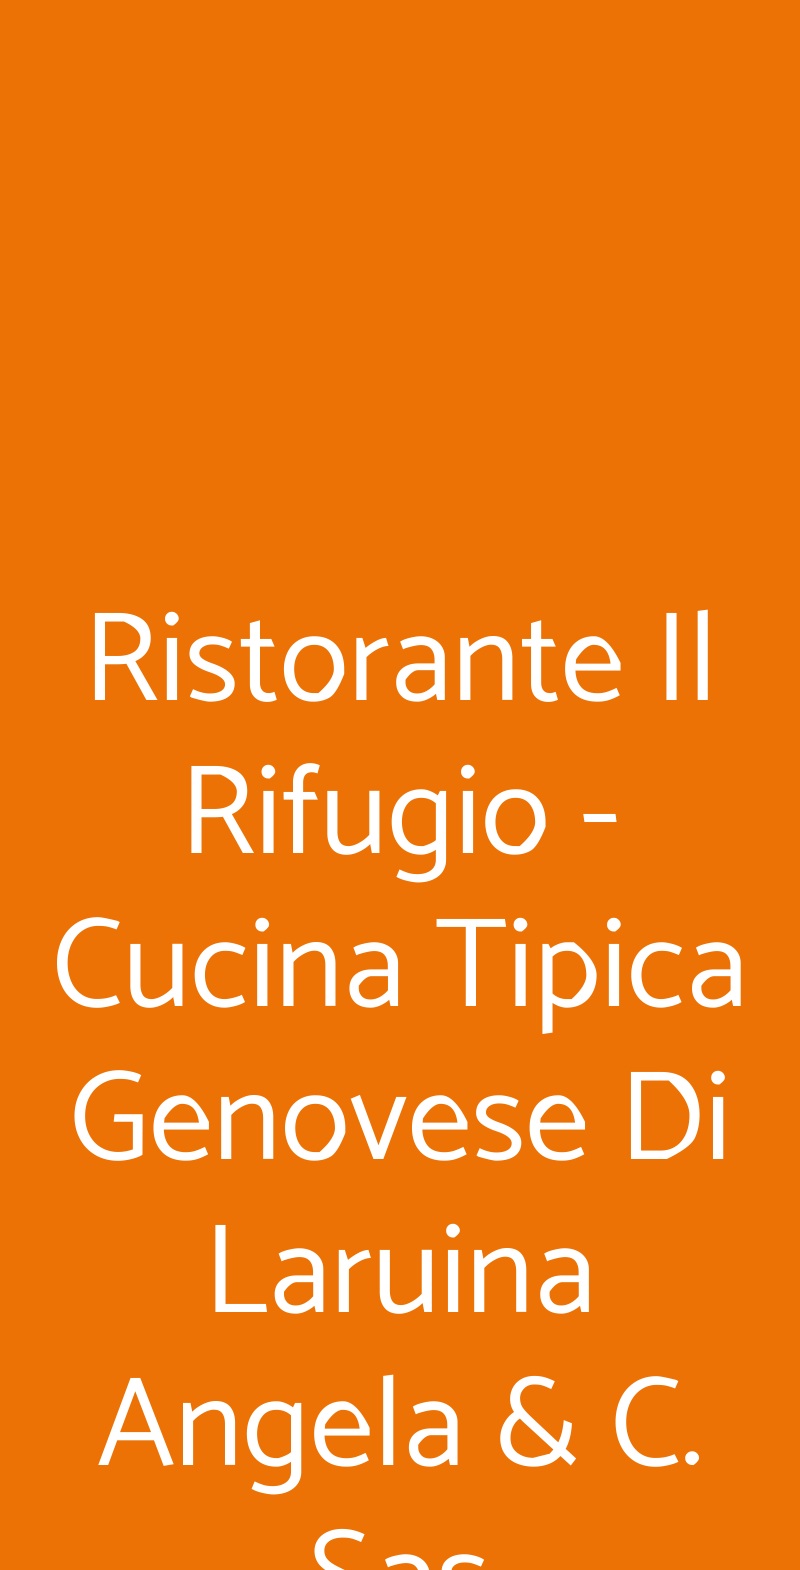 Ristorante Il Rifugio - Cucina Tipica Genovese Di Laruina Angela & C. Sas Serra Ricco menù 1 pagina